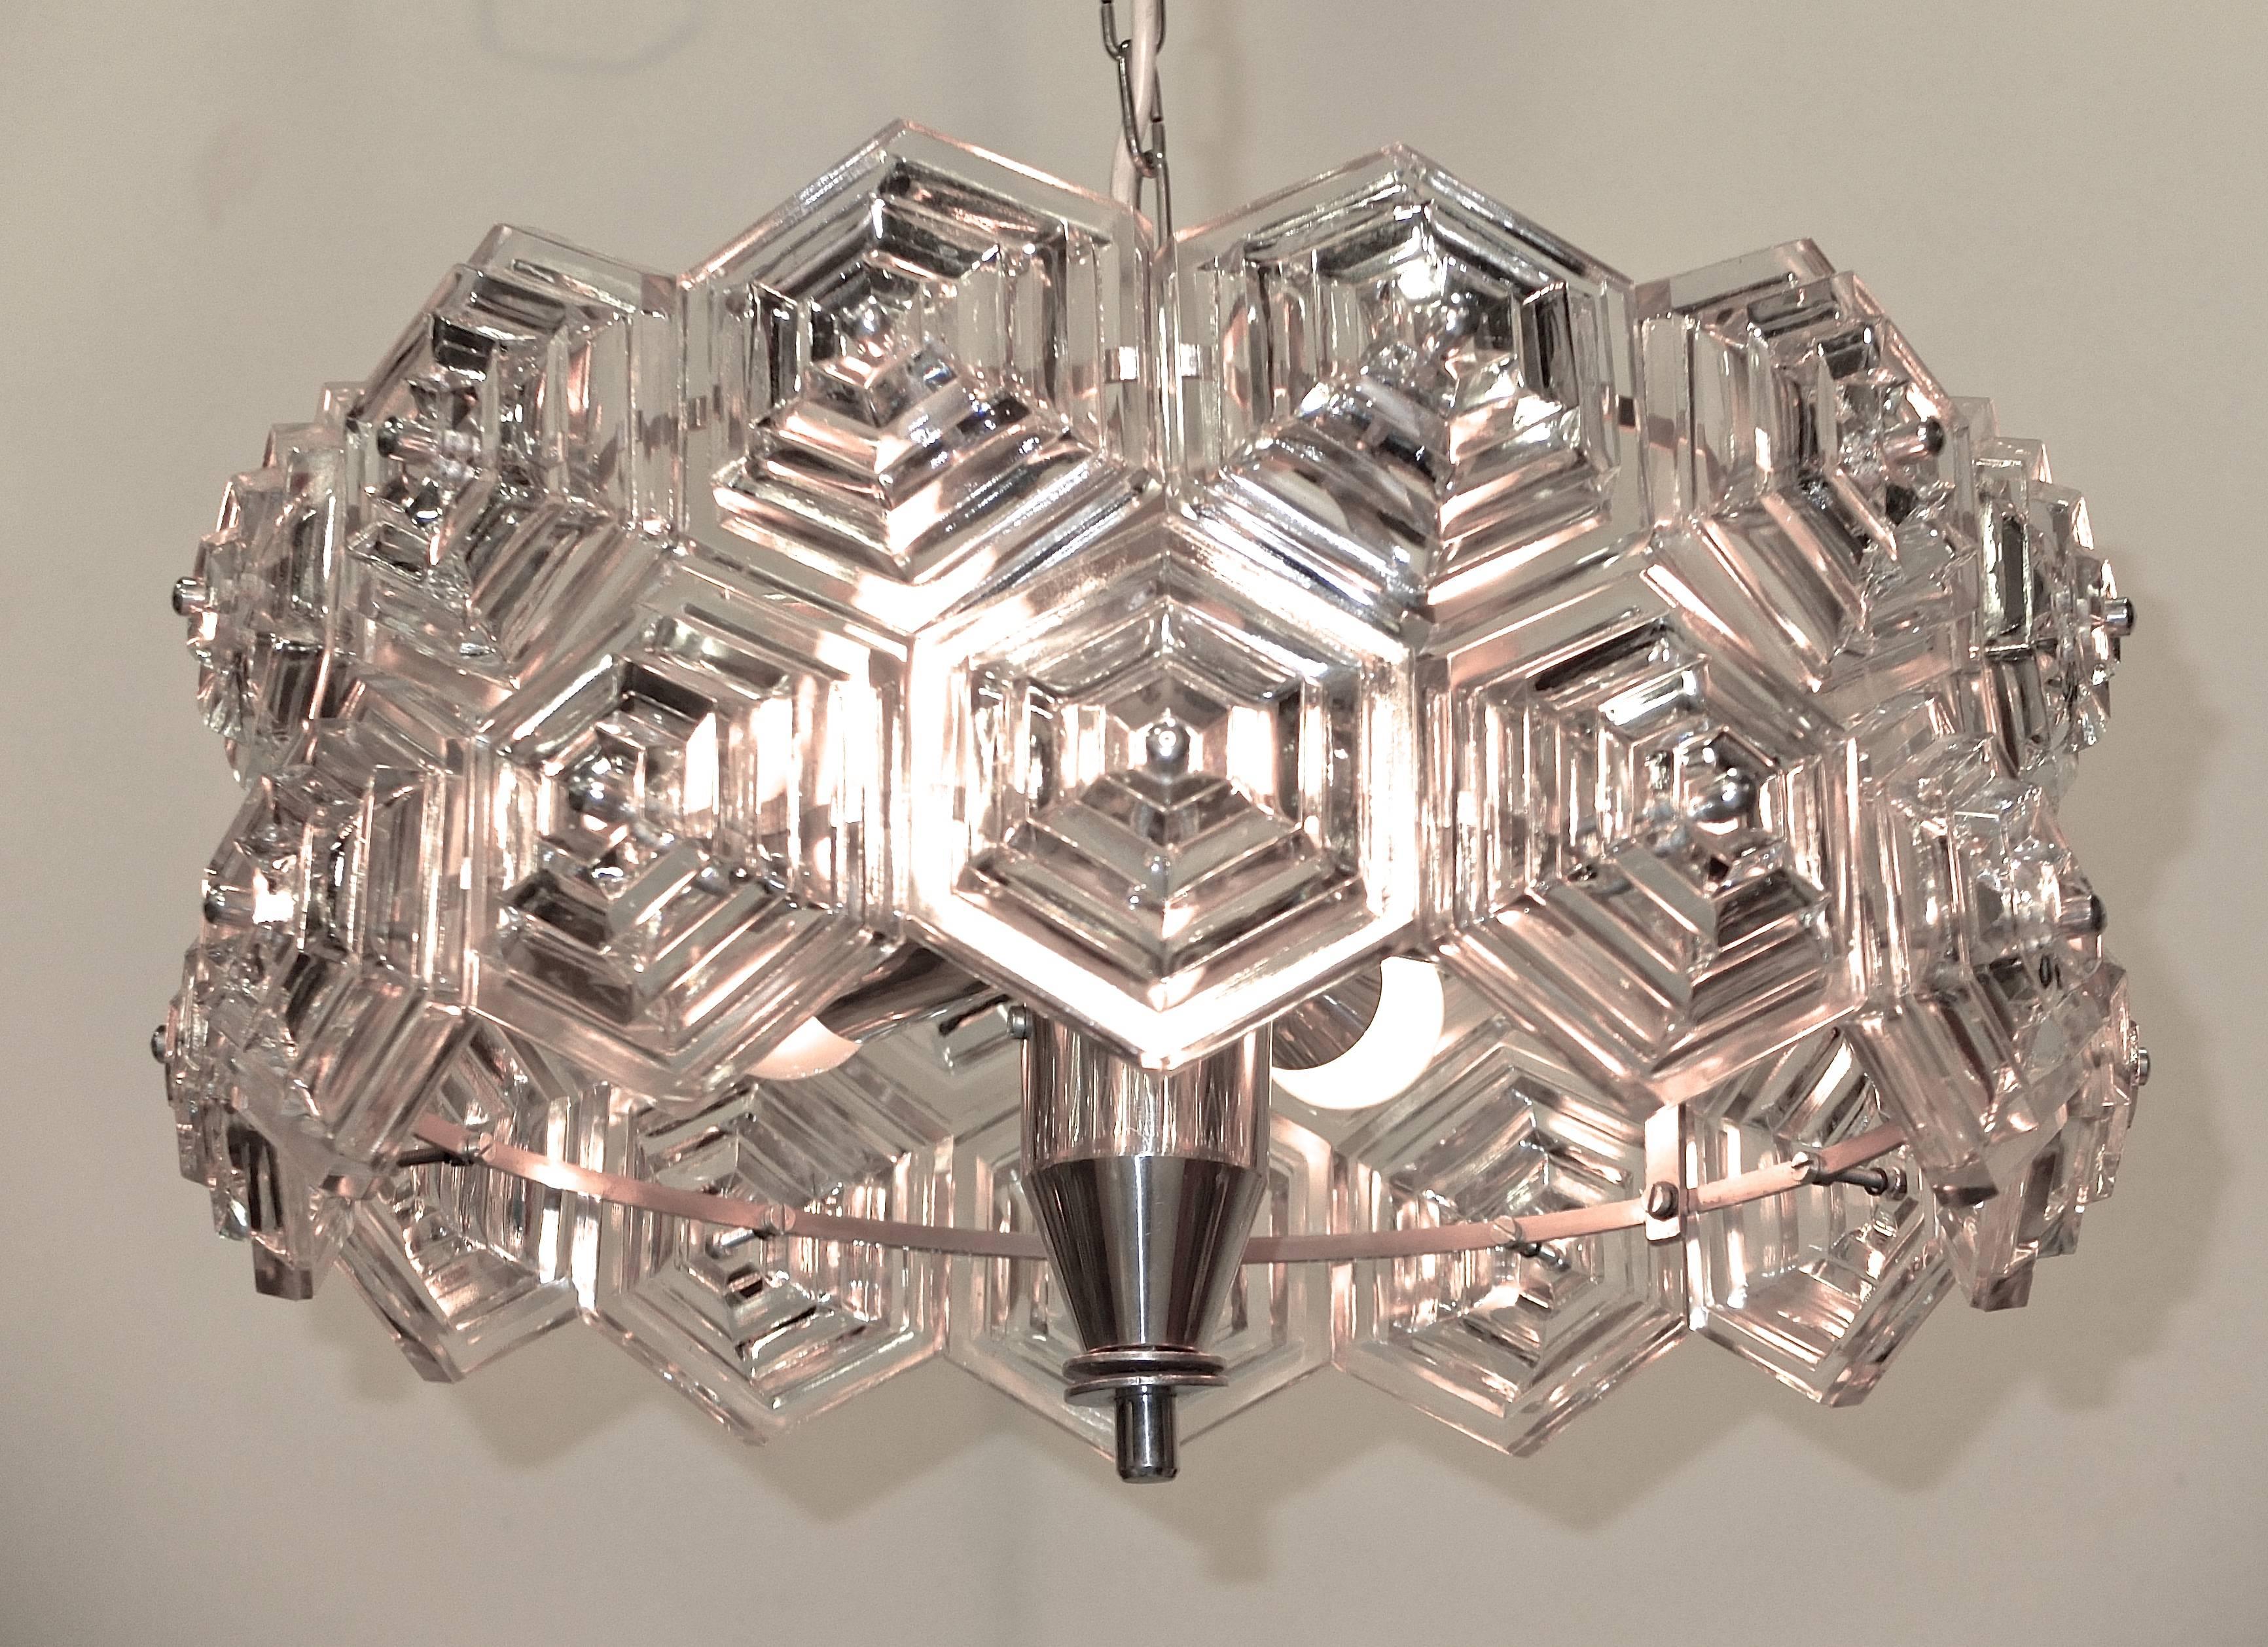 pendentif ou monture encastrée en cristal des années 1960, produit par VEB Kristalleuchte en RDA, avec des prismes de verre hexagonaux étagés sur un cadre chromé.

Recâblé/Convient à six ampoules de taille candélabre jusqu'à 60 watts